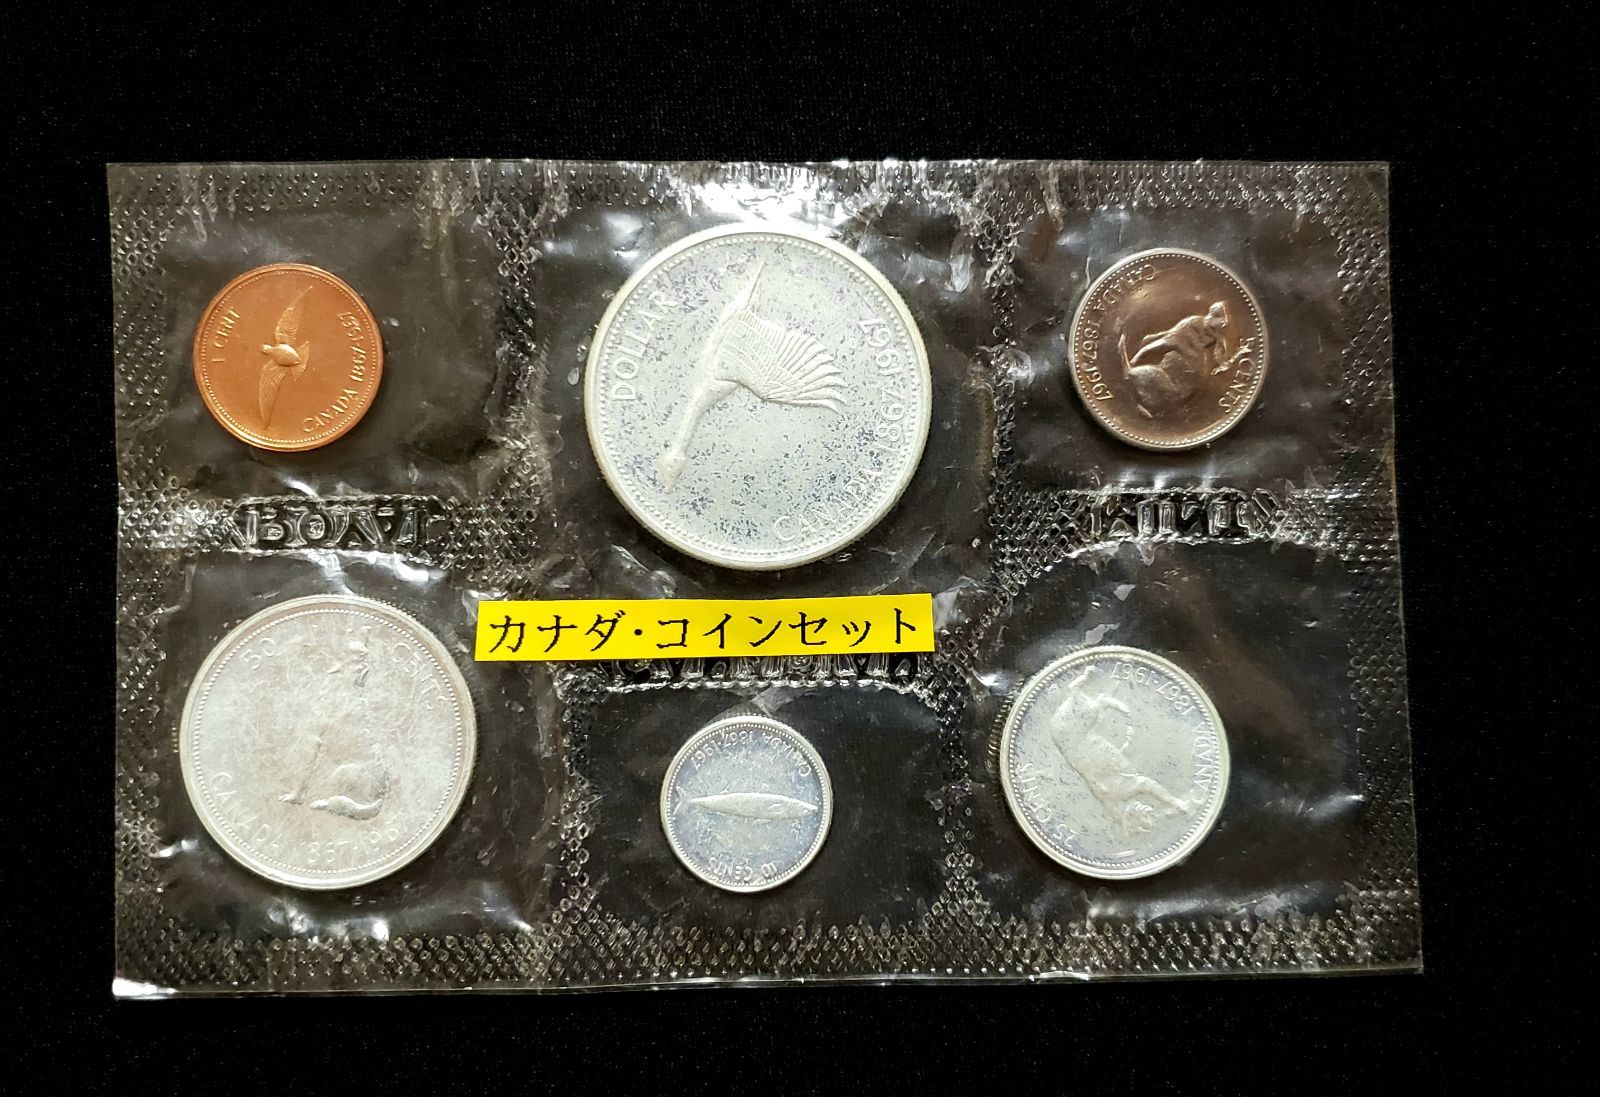 カナダ100年記念1ドル札 Canadian Centennial Bill - 旧貨幣/金貨/銀貨 